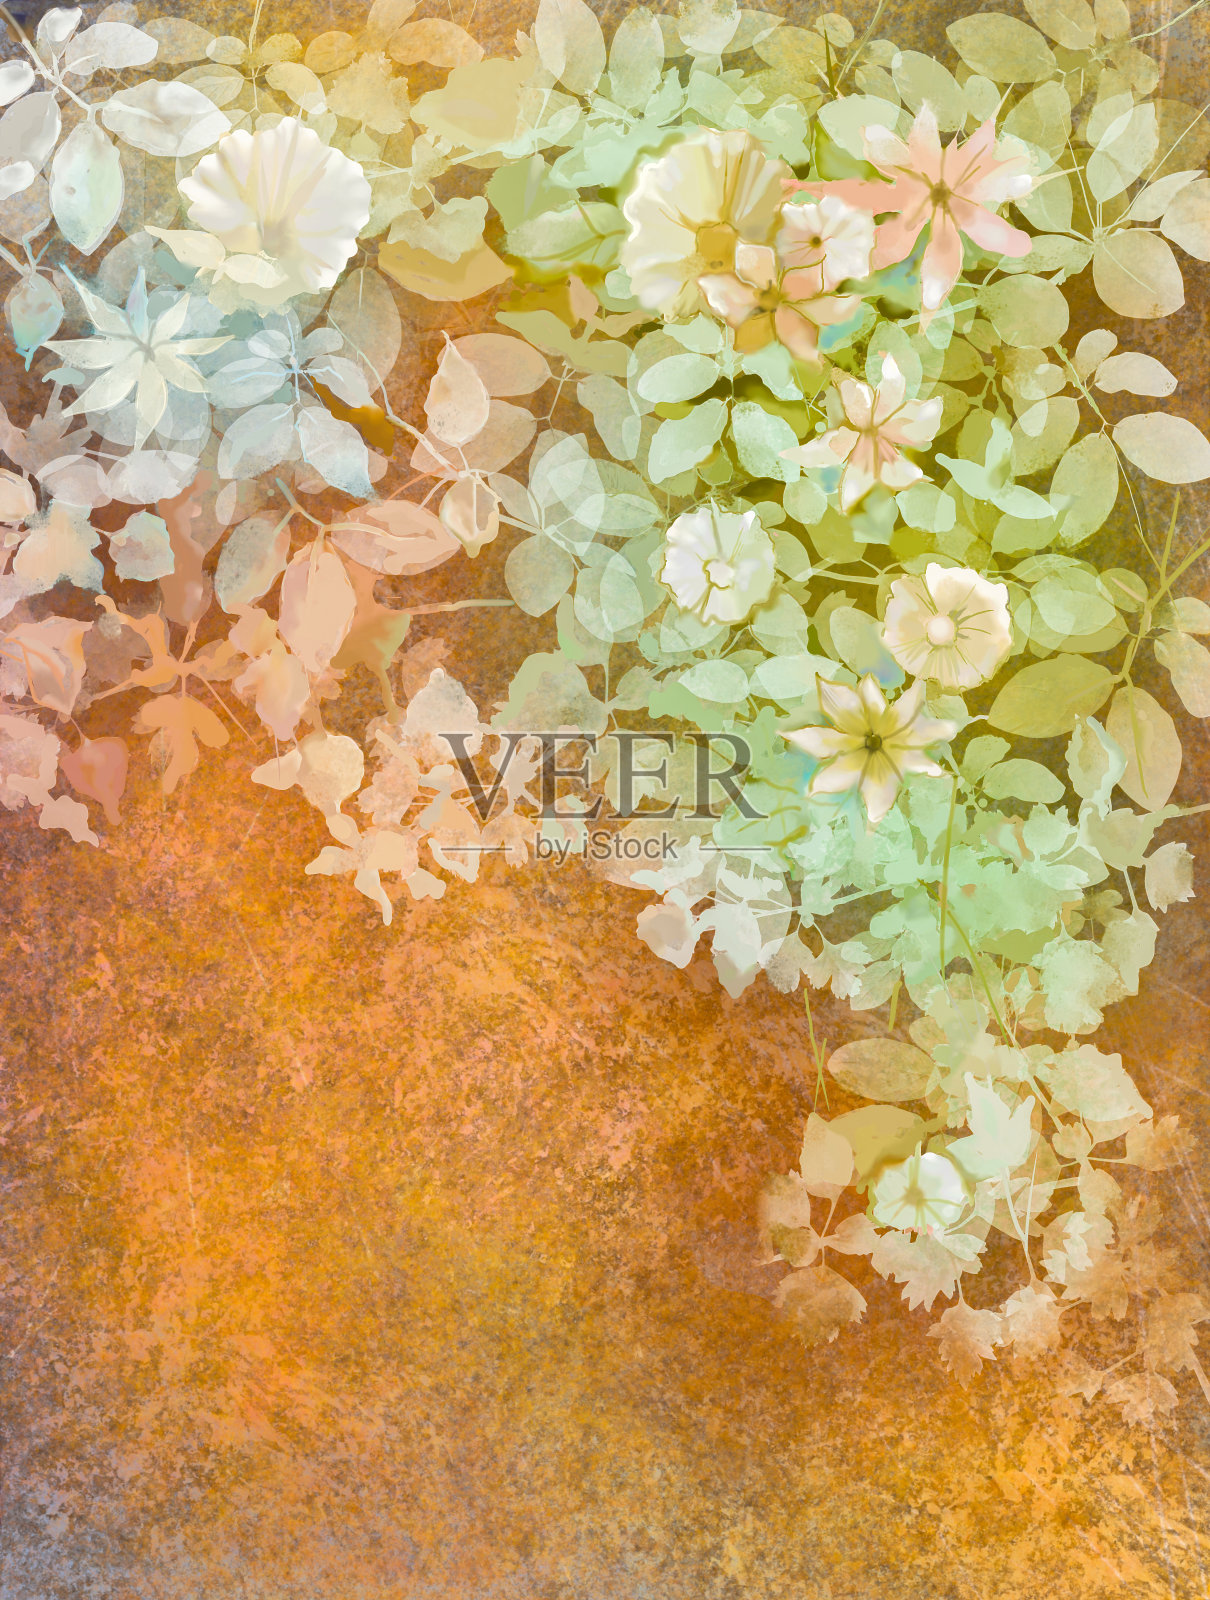 水彩画上白色的花朵和柔软的绿叶插画图片素材